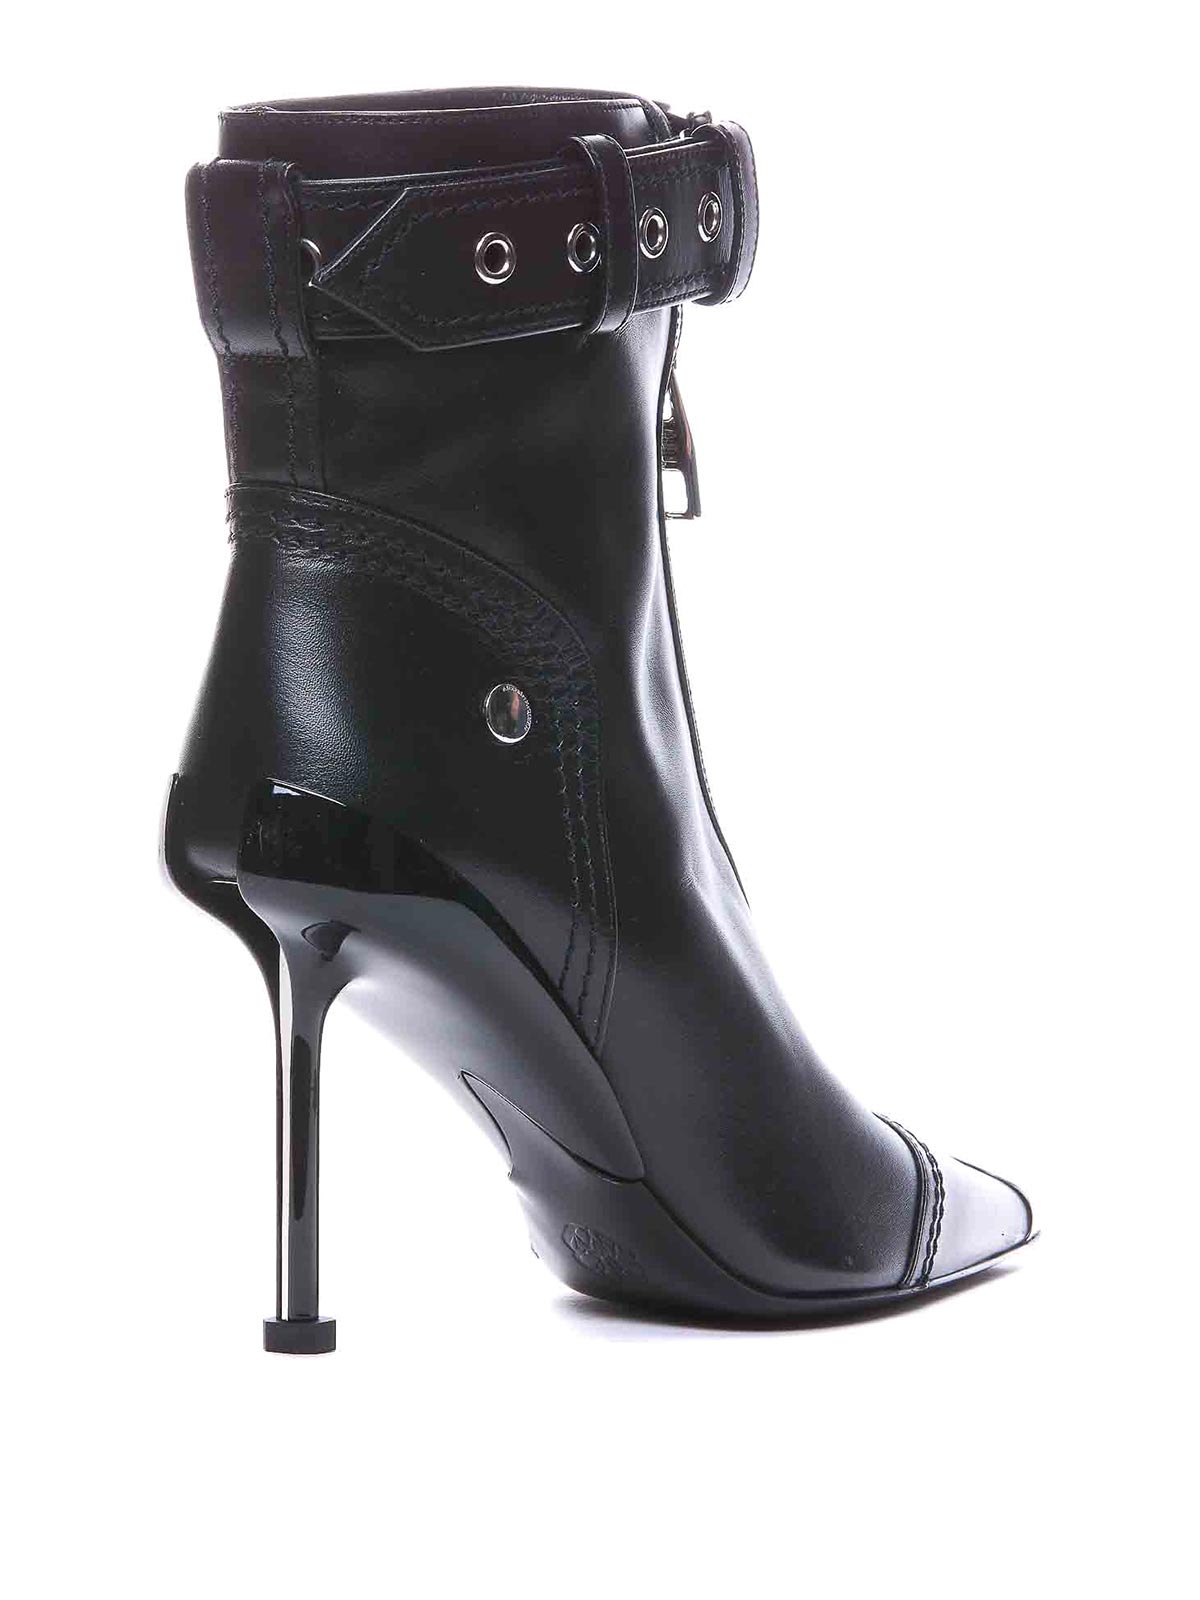 Alexander McQueen Heels for Women, Online Sale up to 70% off